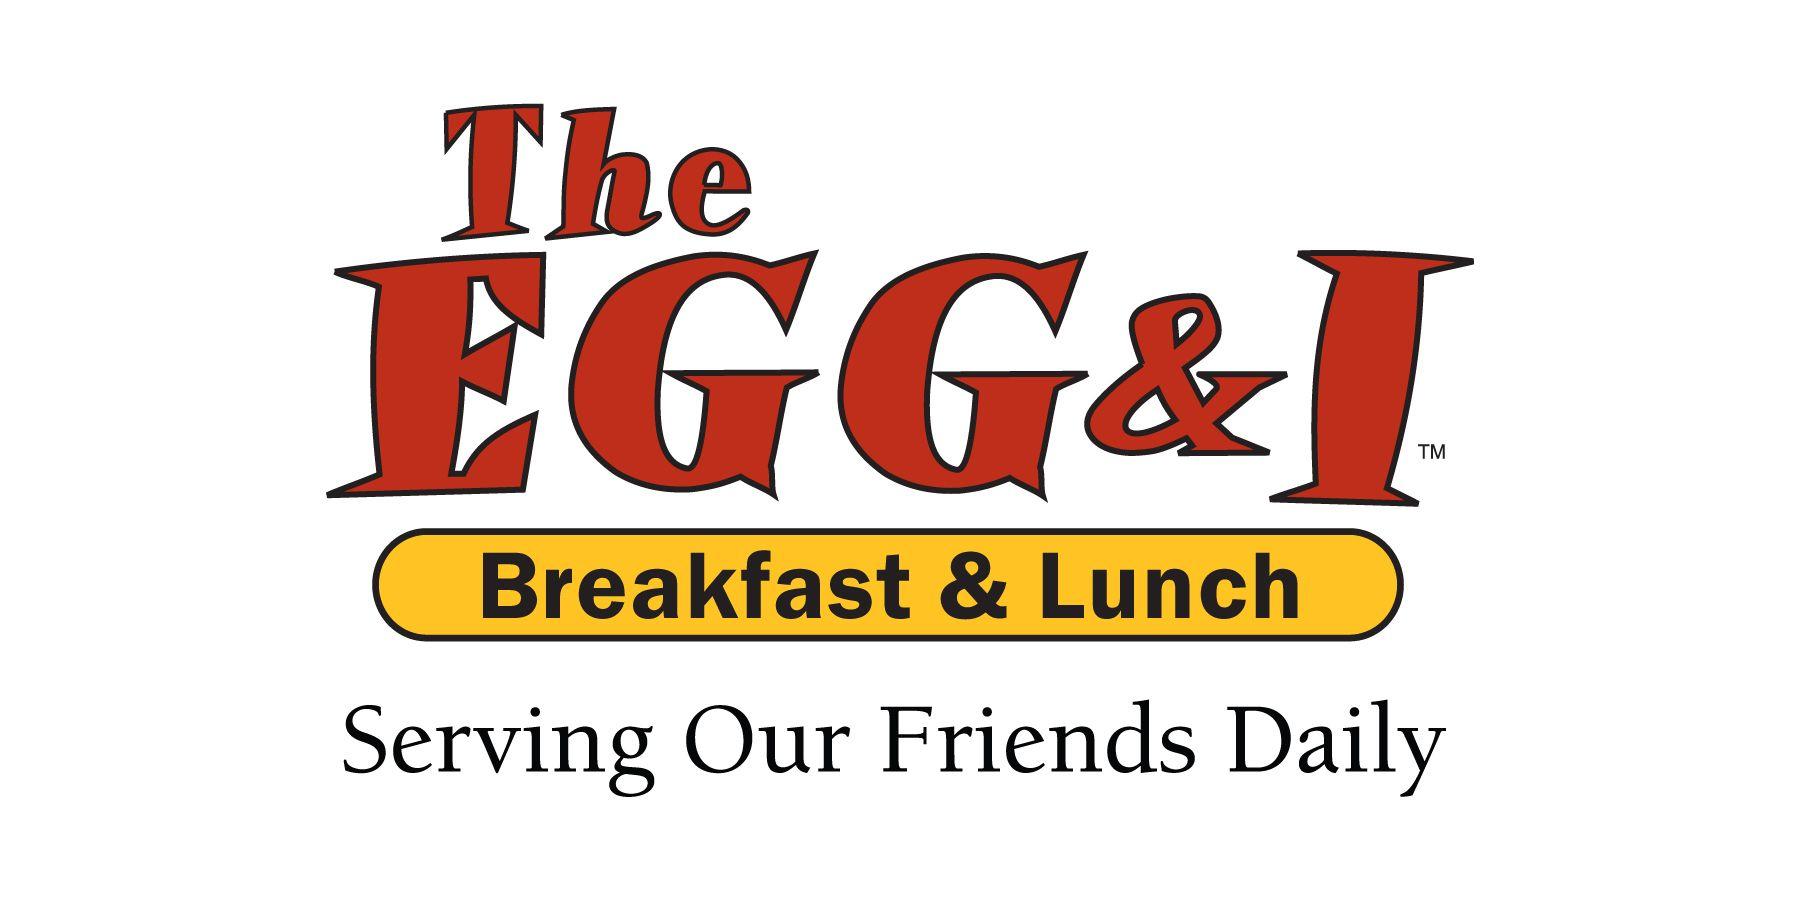 I and the Egg Logo - CARE Community Center